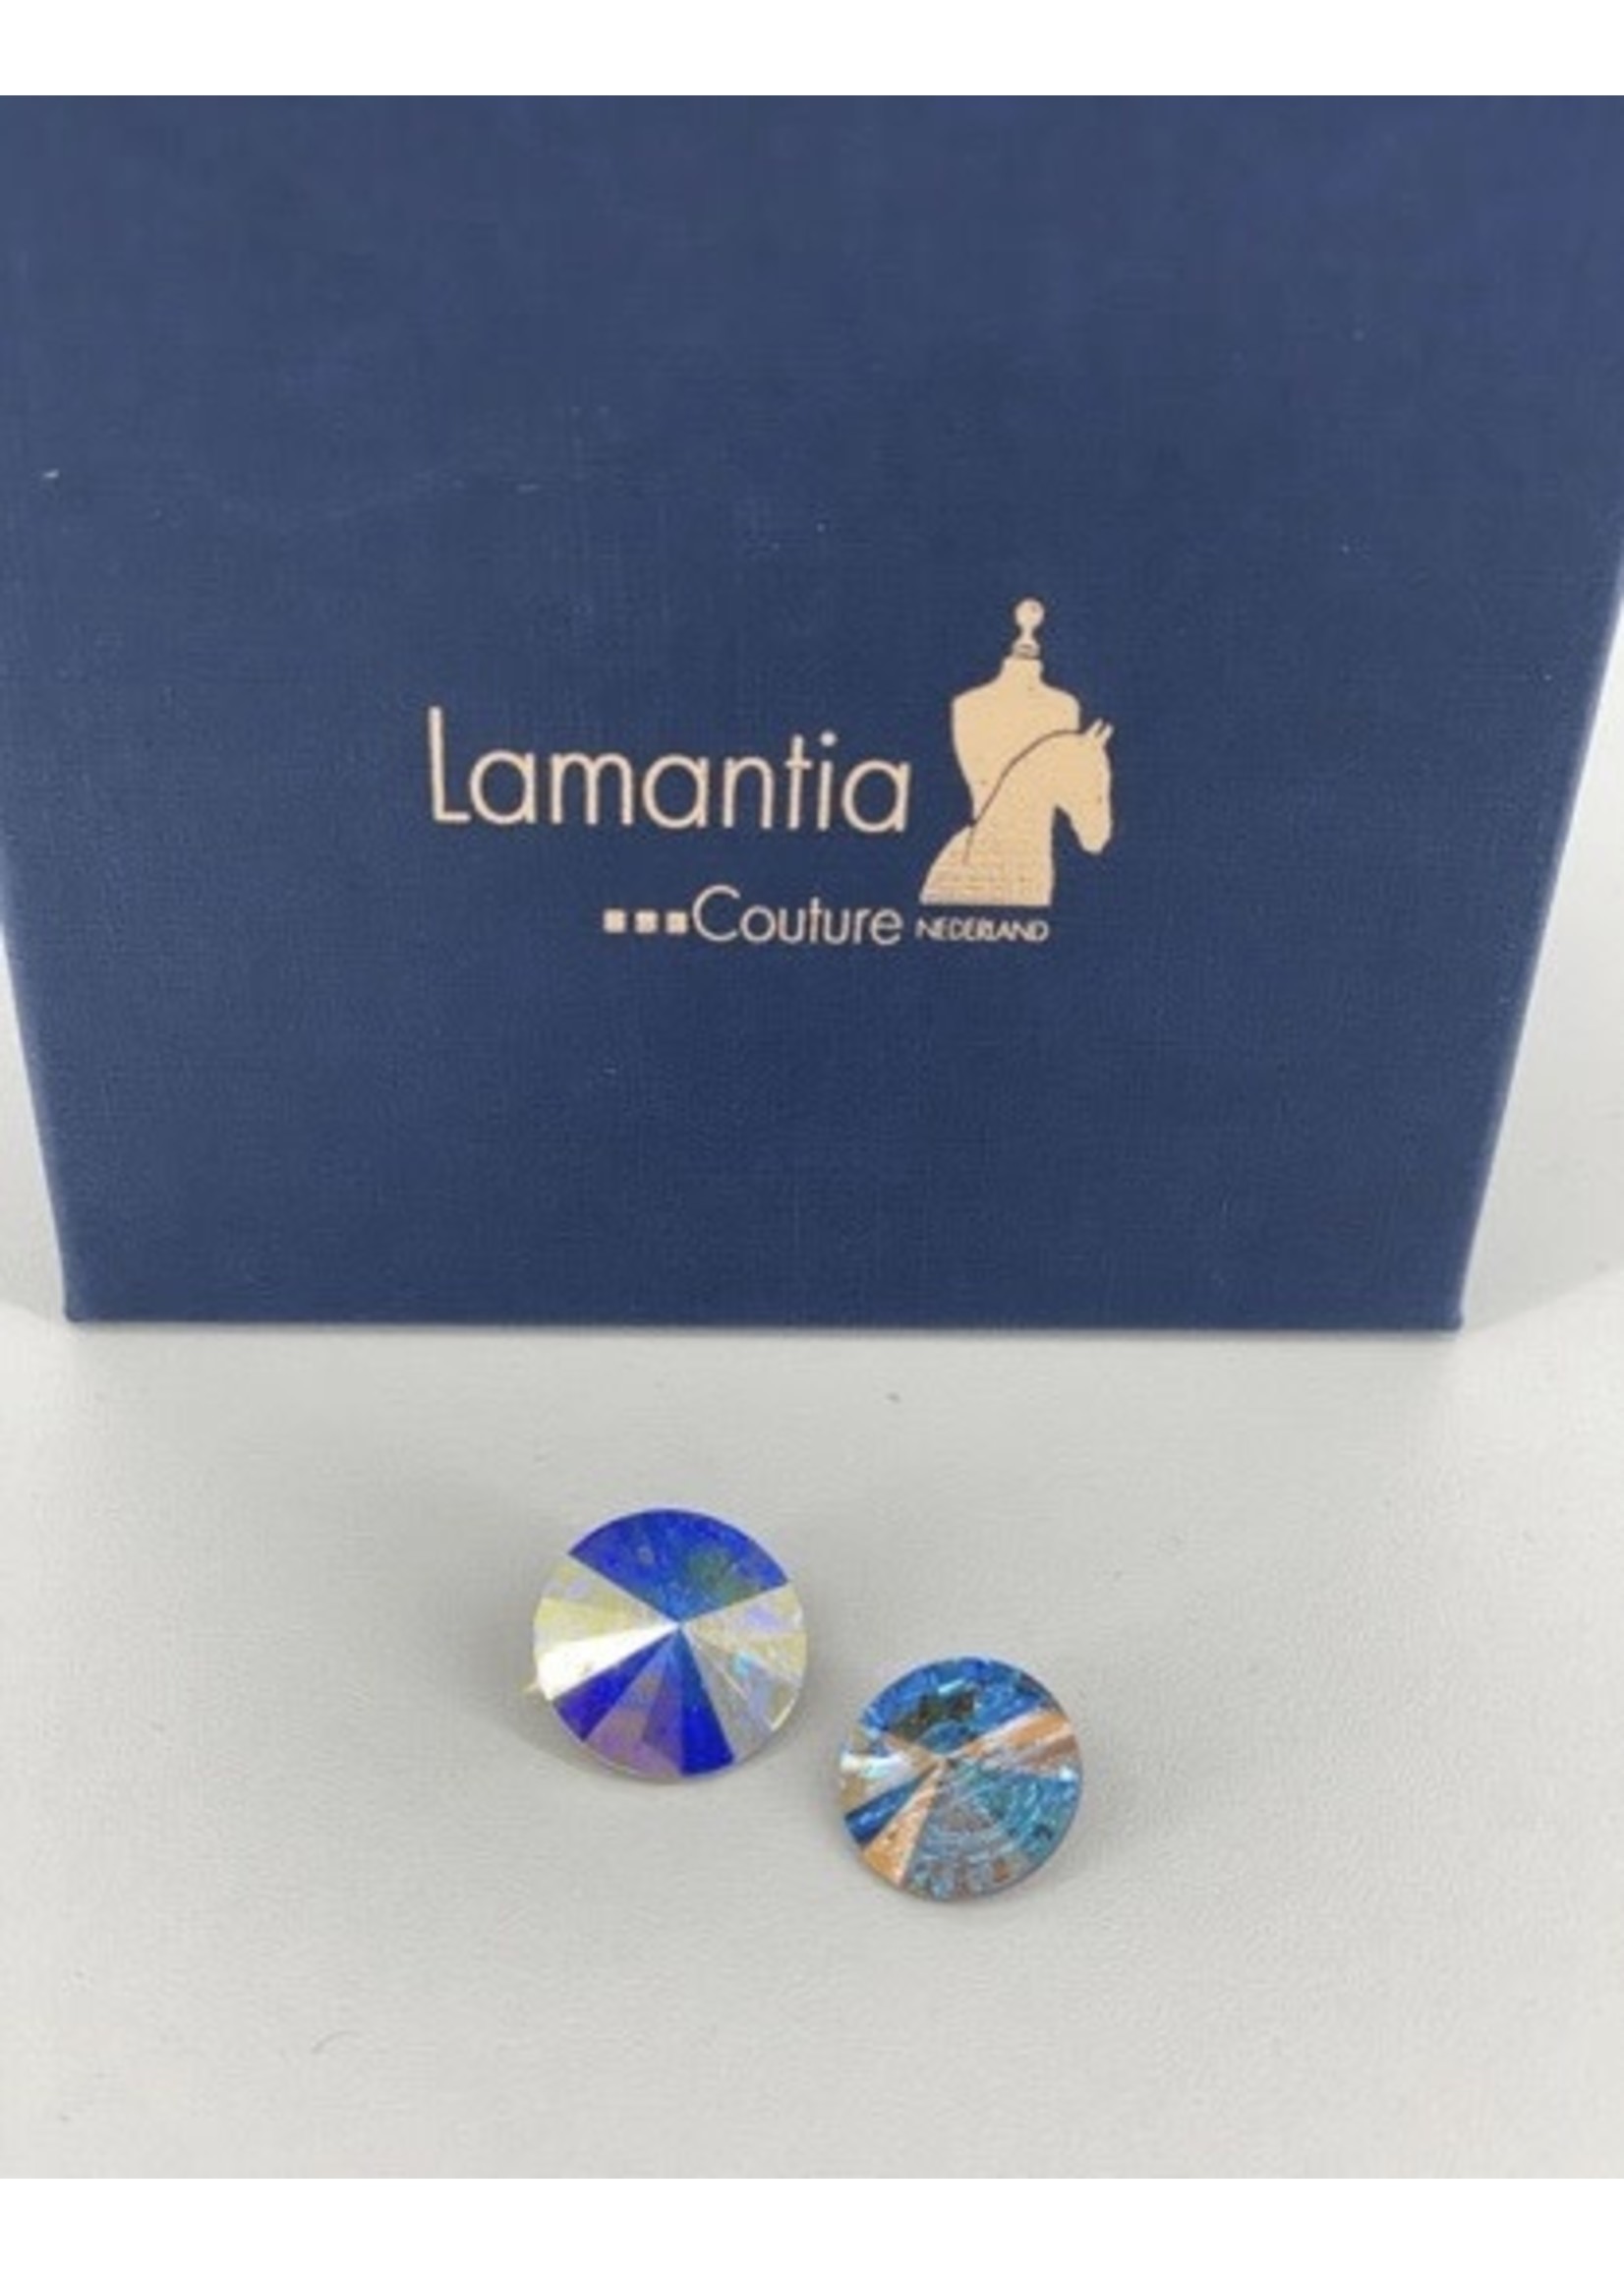 Lamantia Couture Nederland Swarovski knopen set crystal ab met achterkant wedstrijd jas